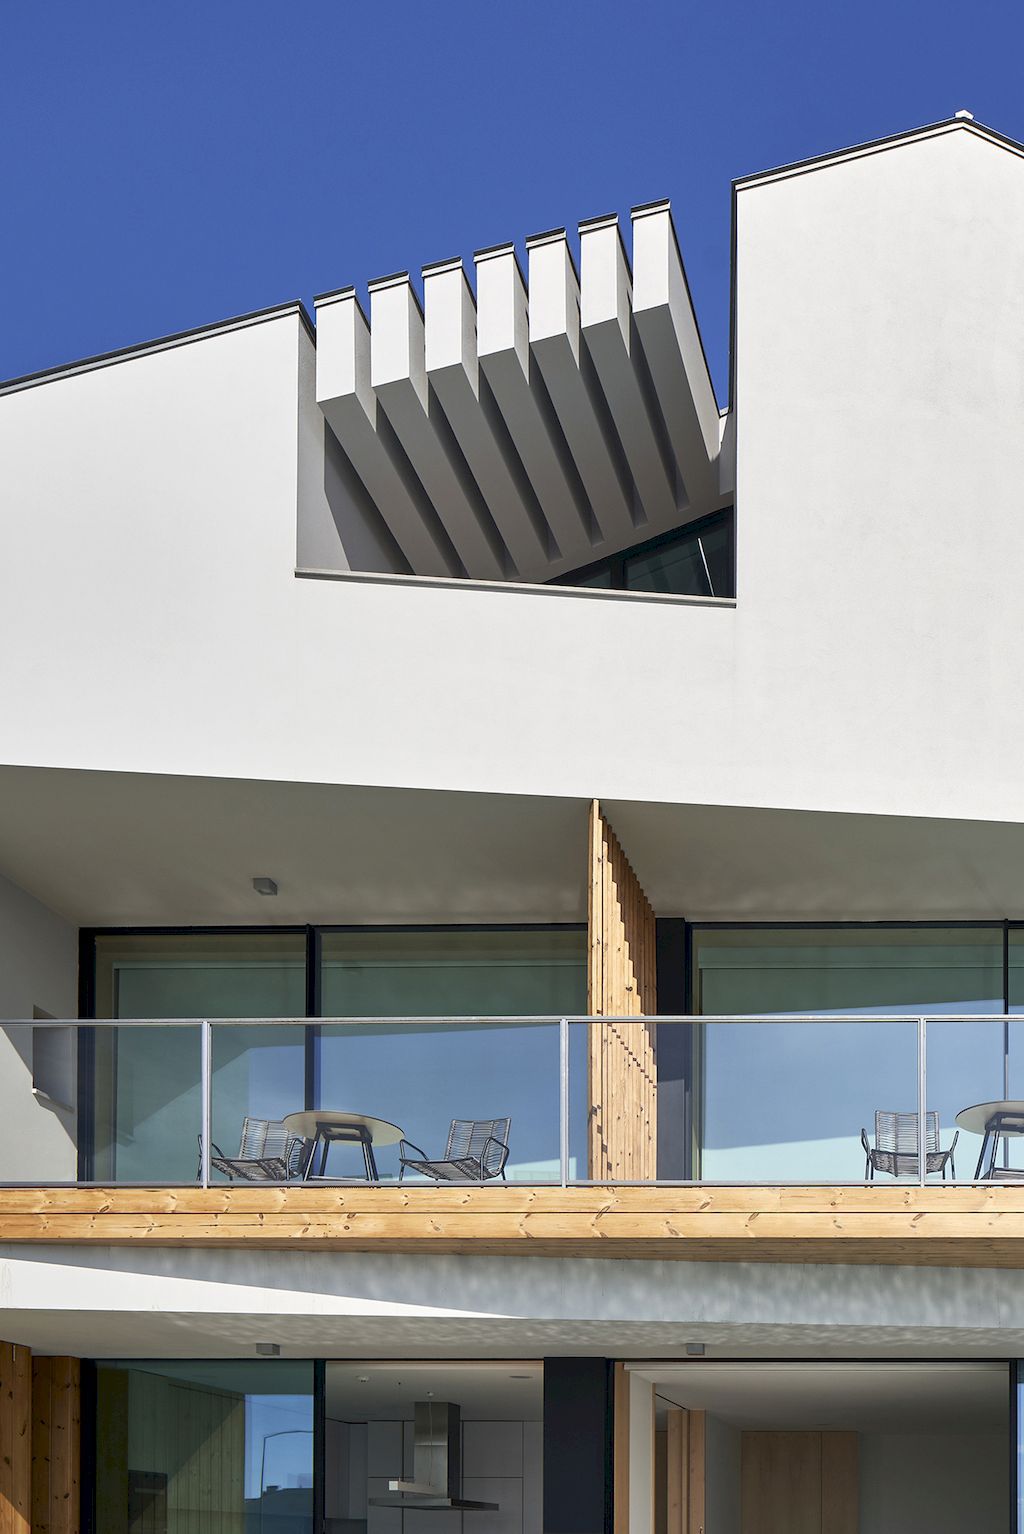 House A.A. in Portugal designed by Atelier de Arquitectura Lopes da Costa